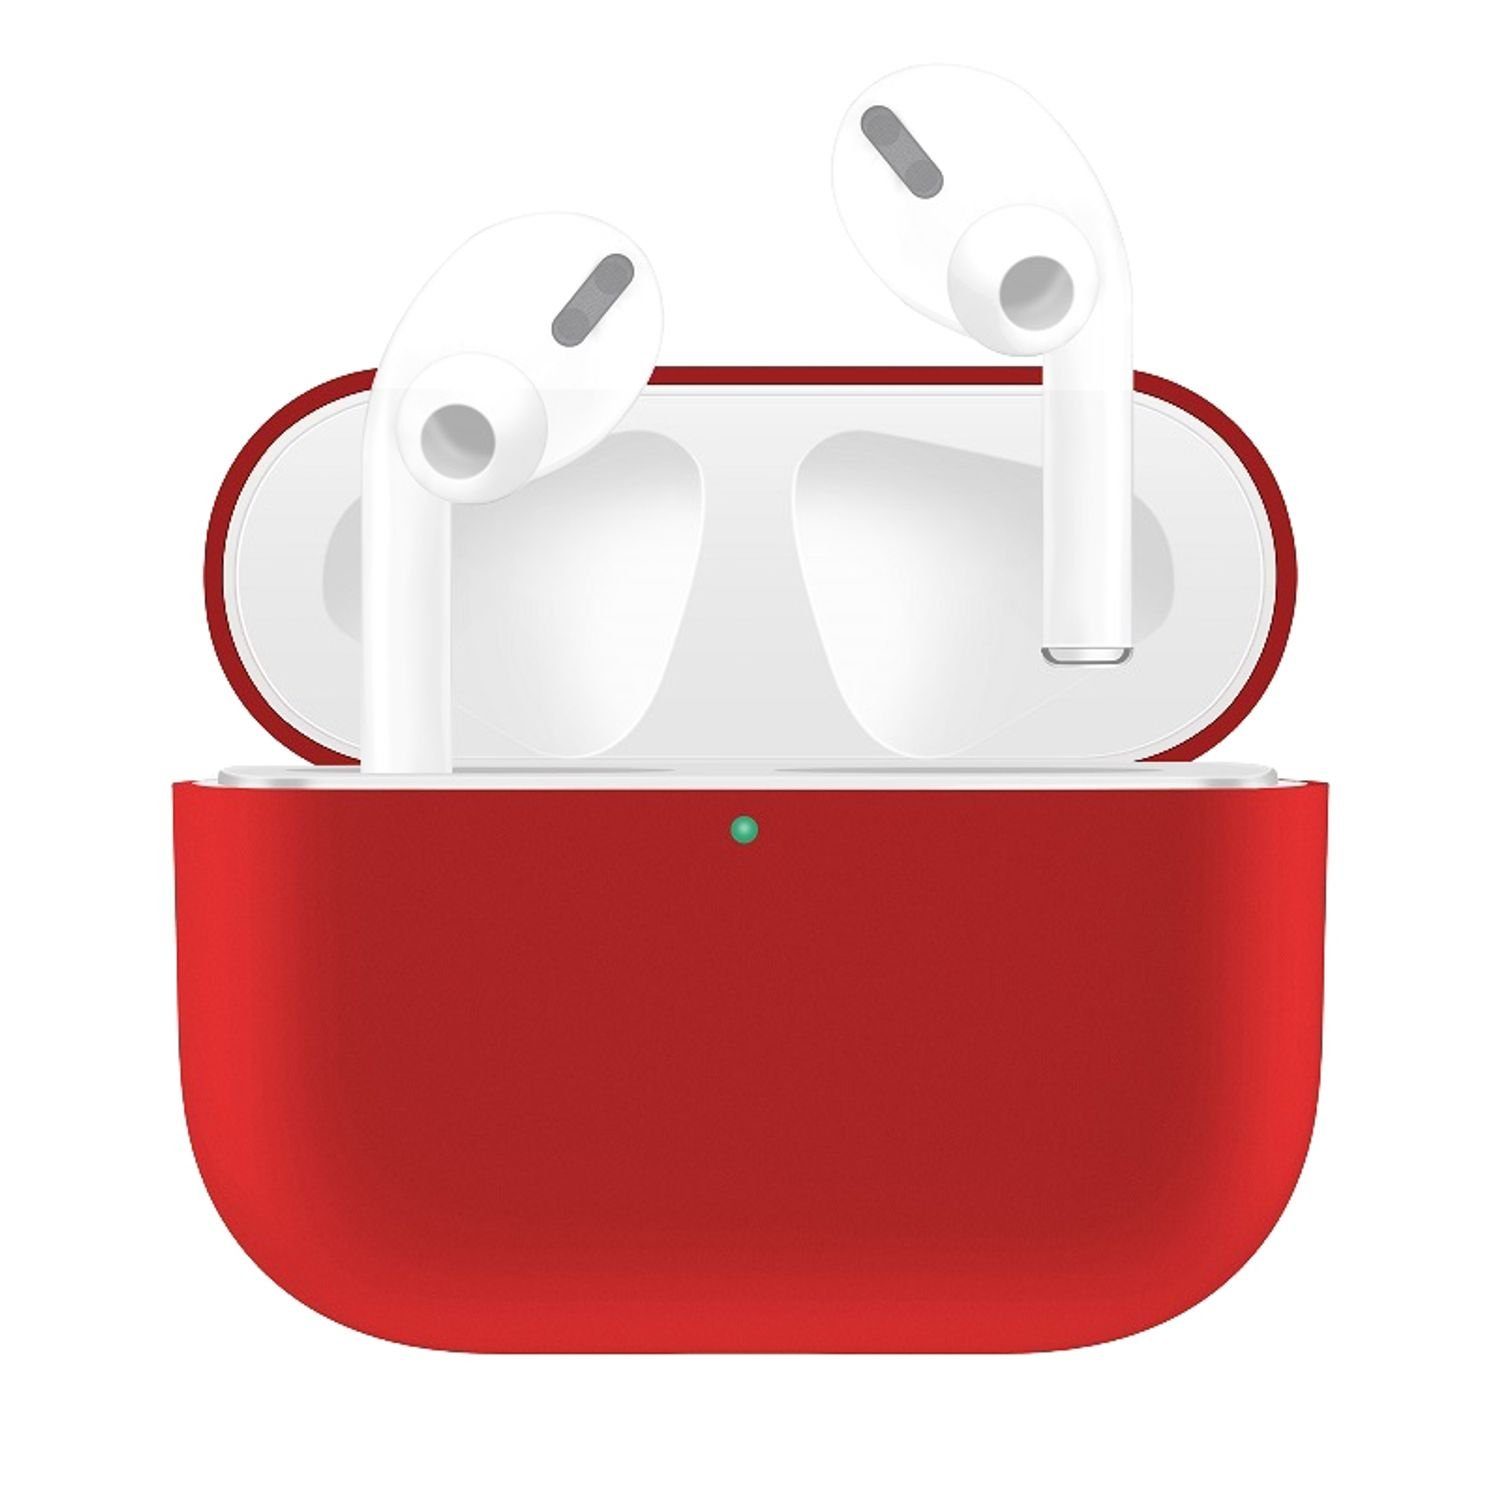 König Design Handyhülle Apple AirPods Pro, Schutzhülle für Apple AirPods Pro  Handy Hülle Silikon Tasche Case Cover Rot online kaufen | OTTO